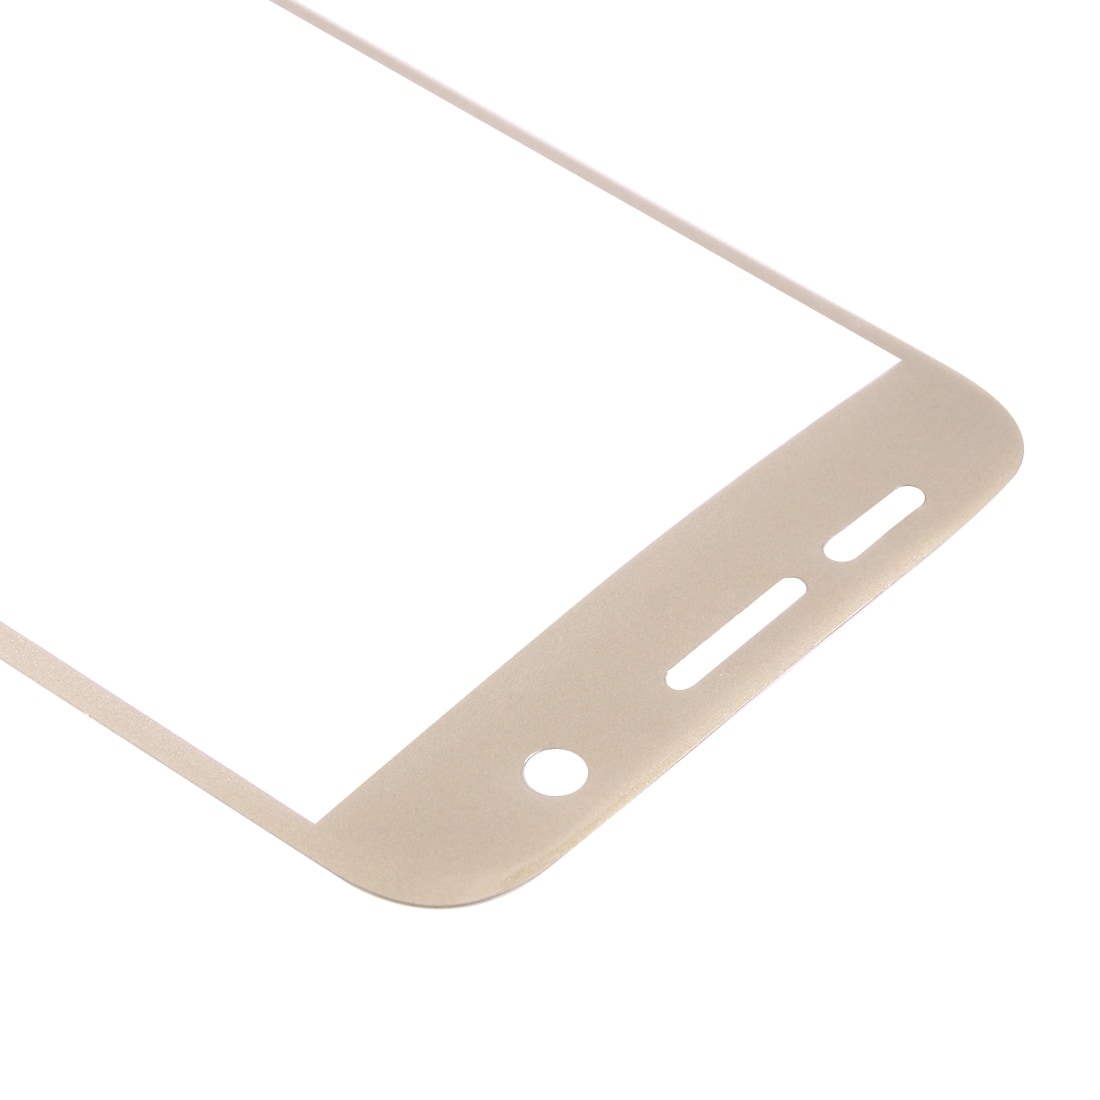 Kattava Näytönsuoja Samsung Galaxy S7 Edge